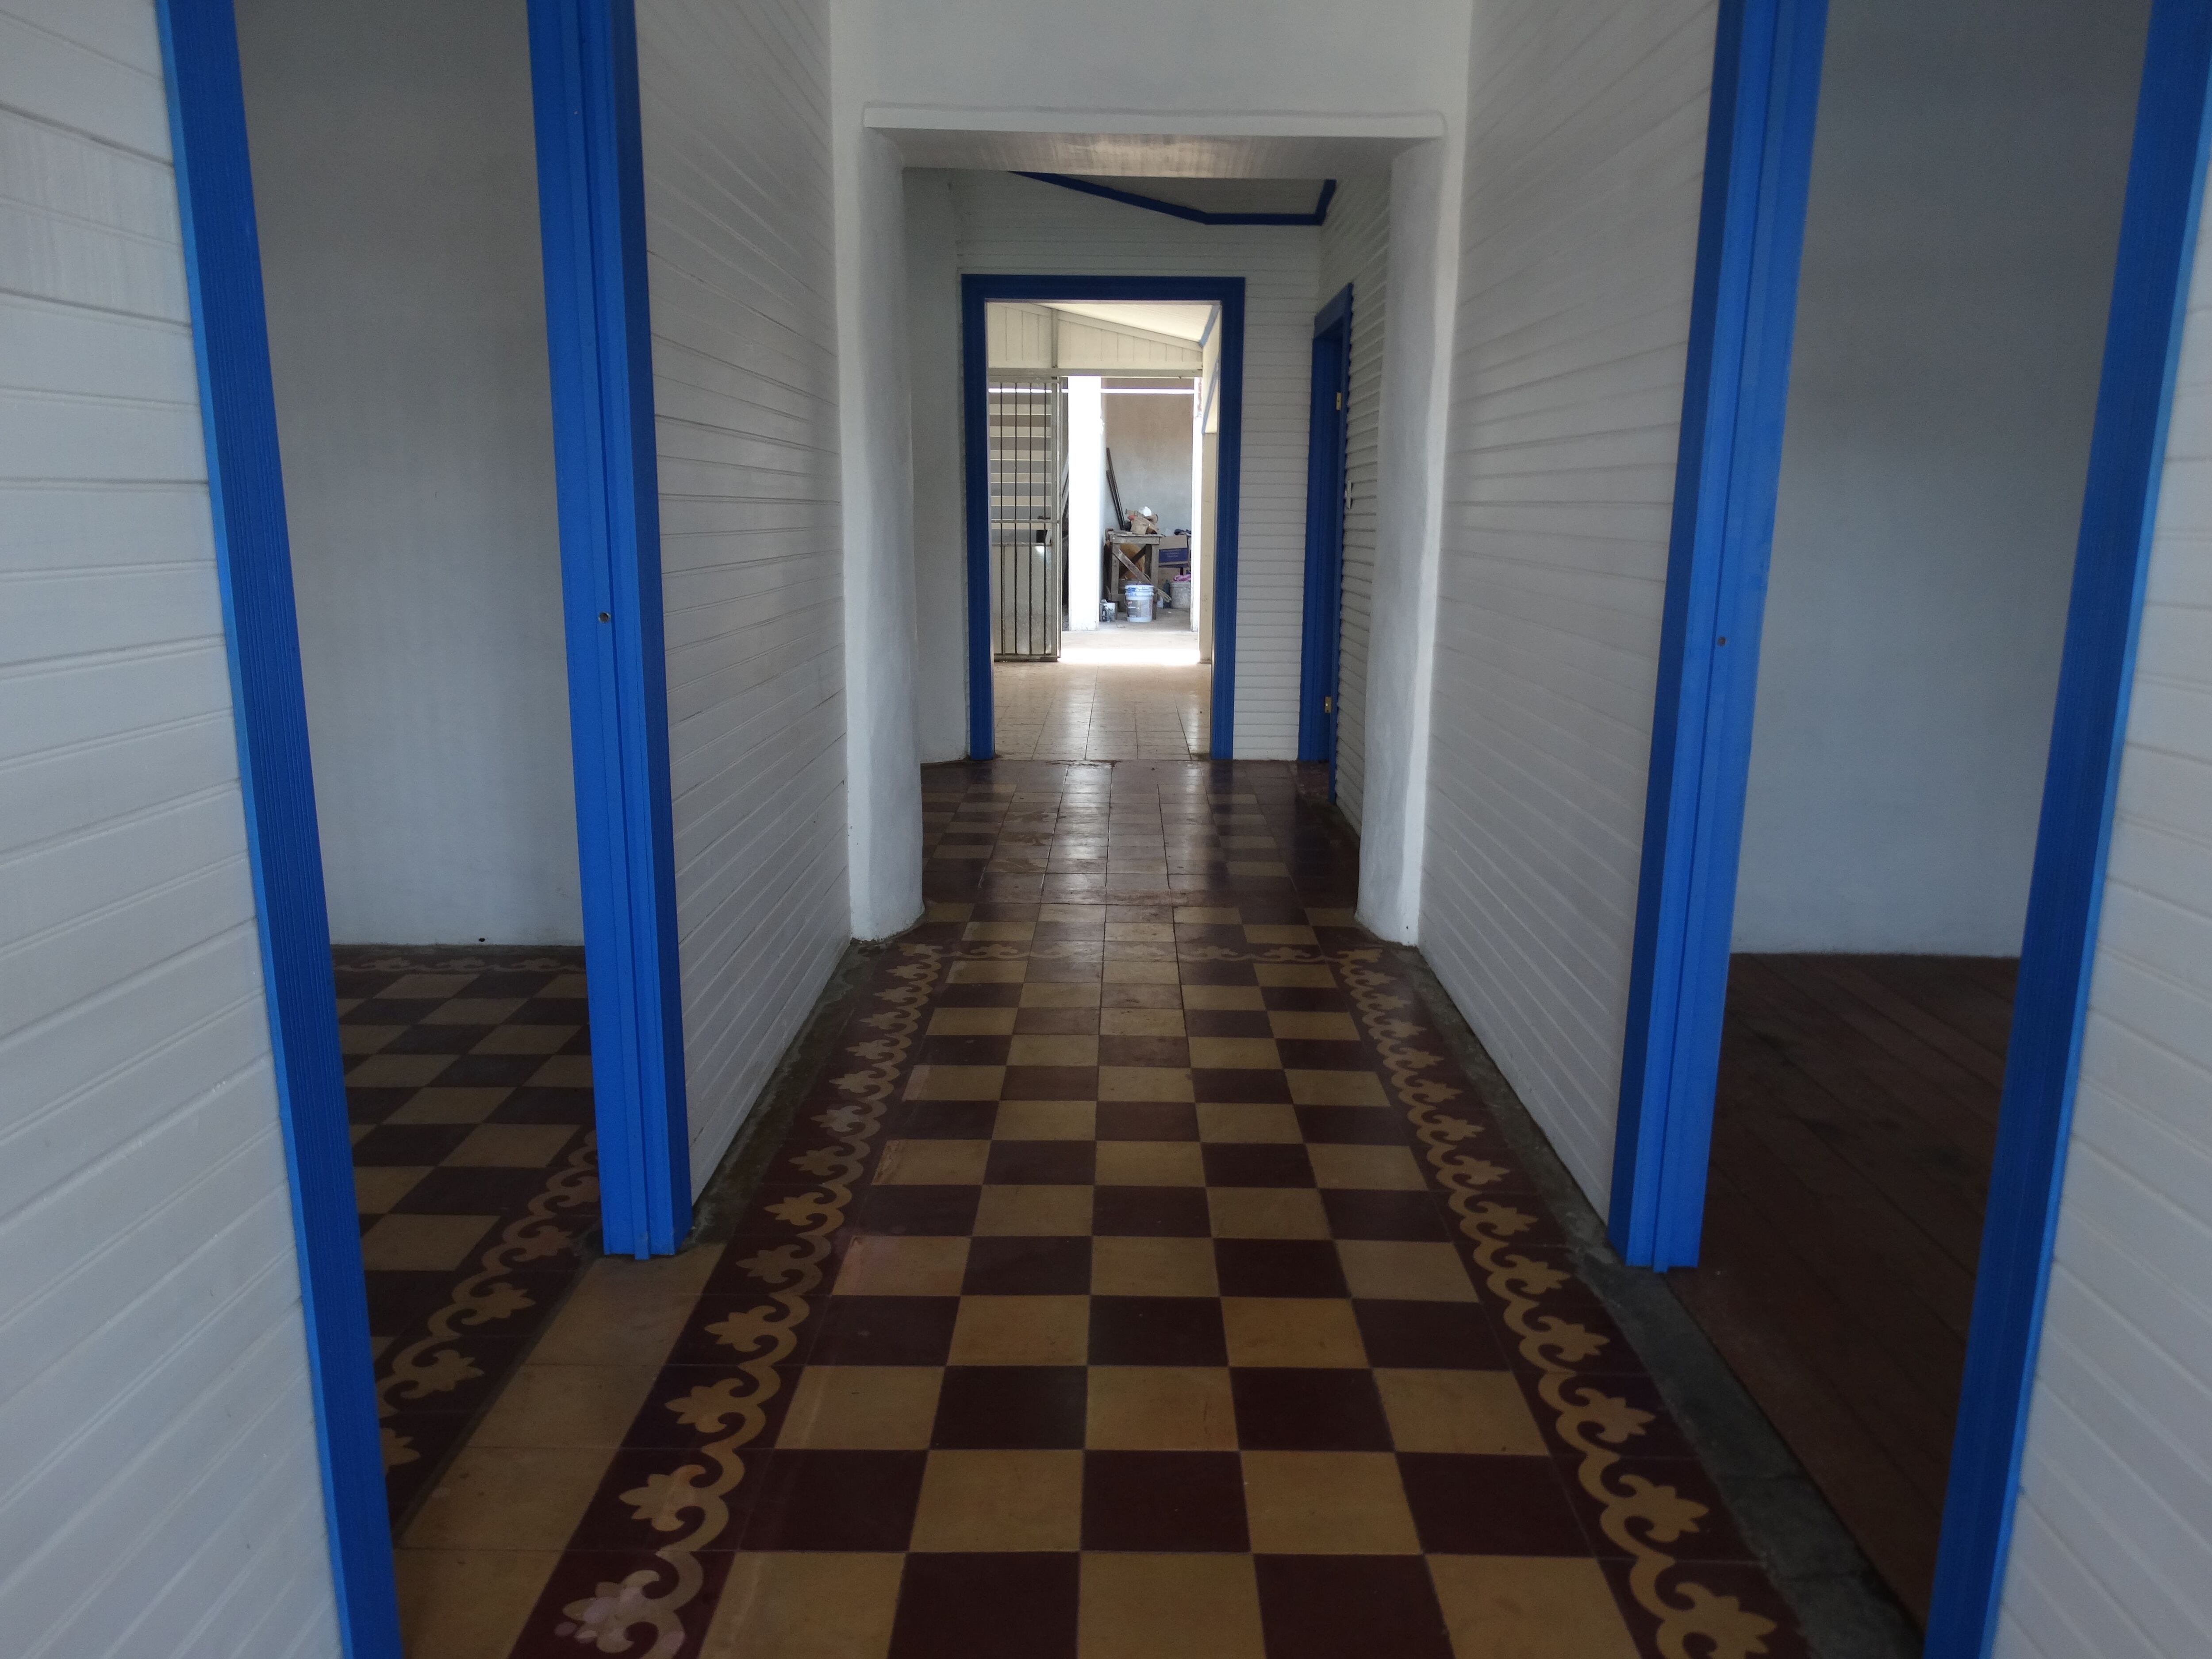 Esos son los pasillos de la Casa Delgado Carvajal, que pronto abrirá sus puertas como restaurante típico para que todos los costarricenses disfruten de esta edificación que fue declarada patrimonio histórico-arquitectónico.